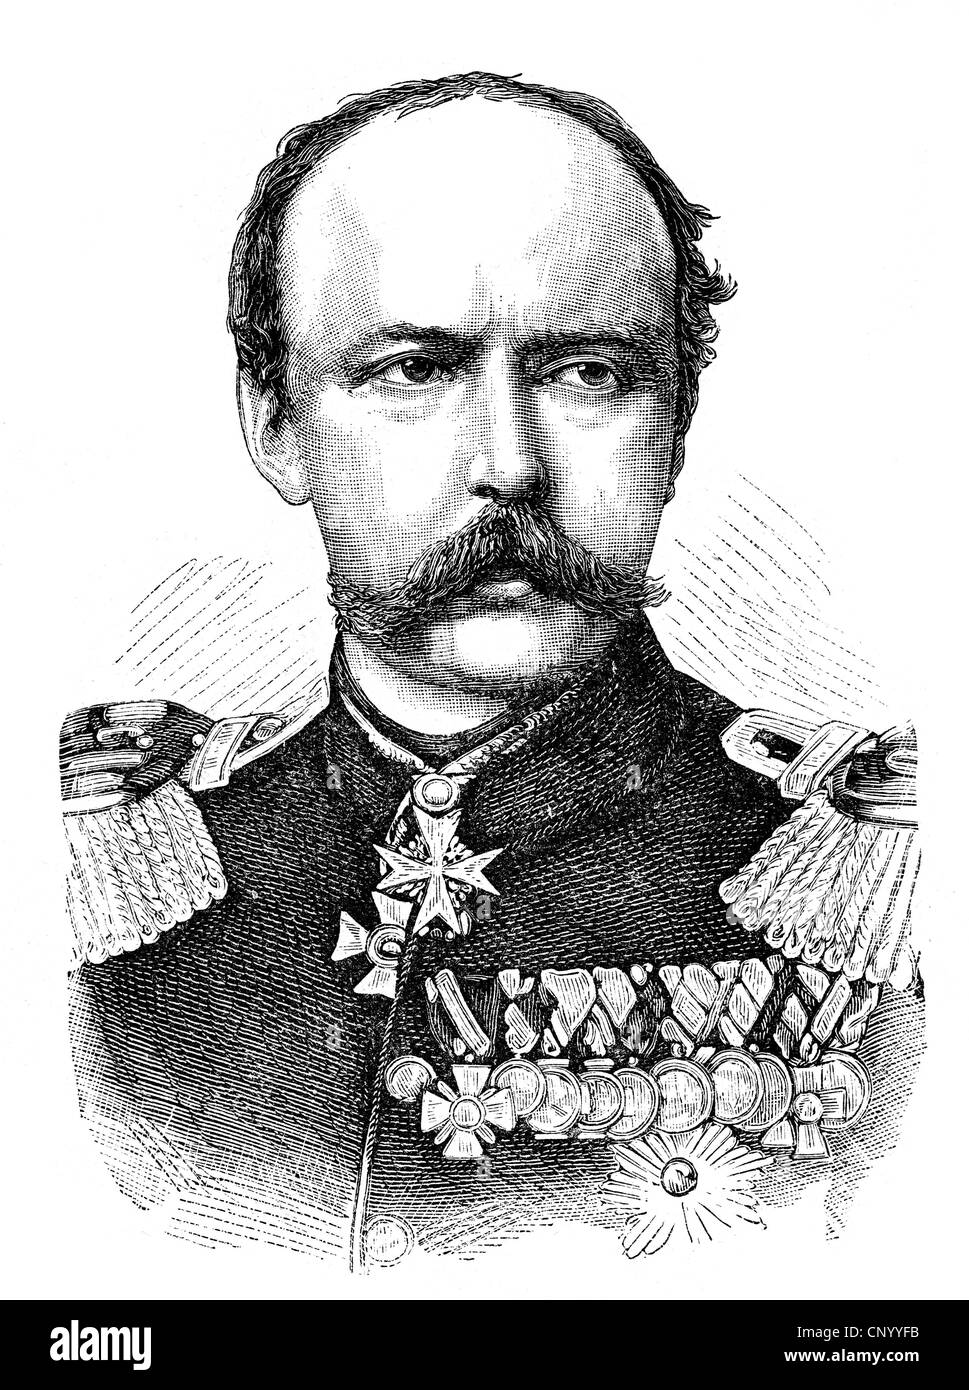 Carlo, 29.6.1801 - 21.1.1883, Principe di Prussia, generale prussiano, ritratto, incisione in legno, circa 1880, Foto Stock